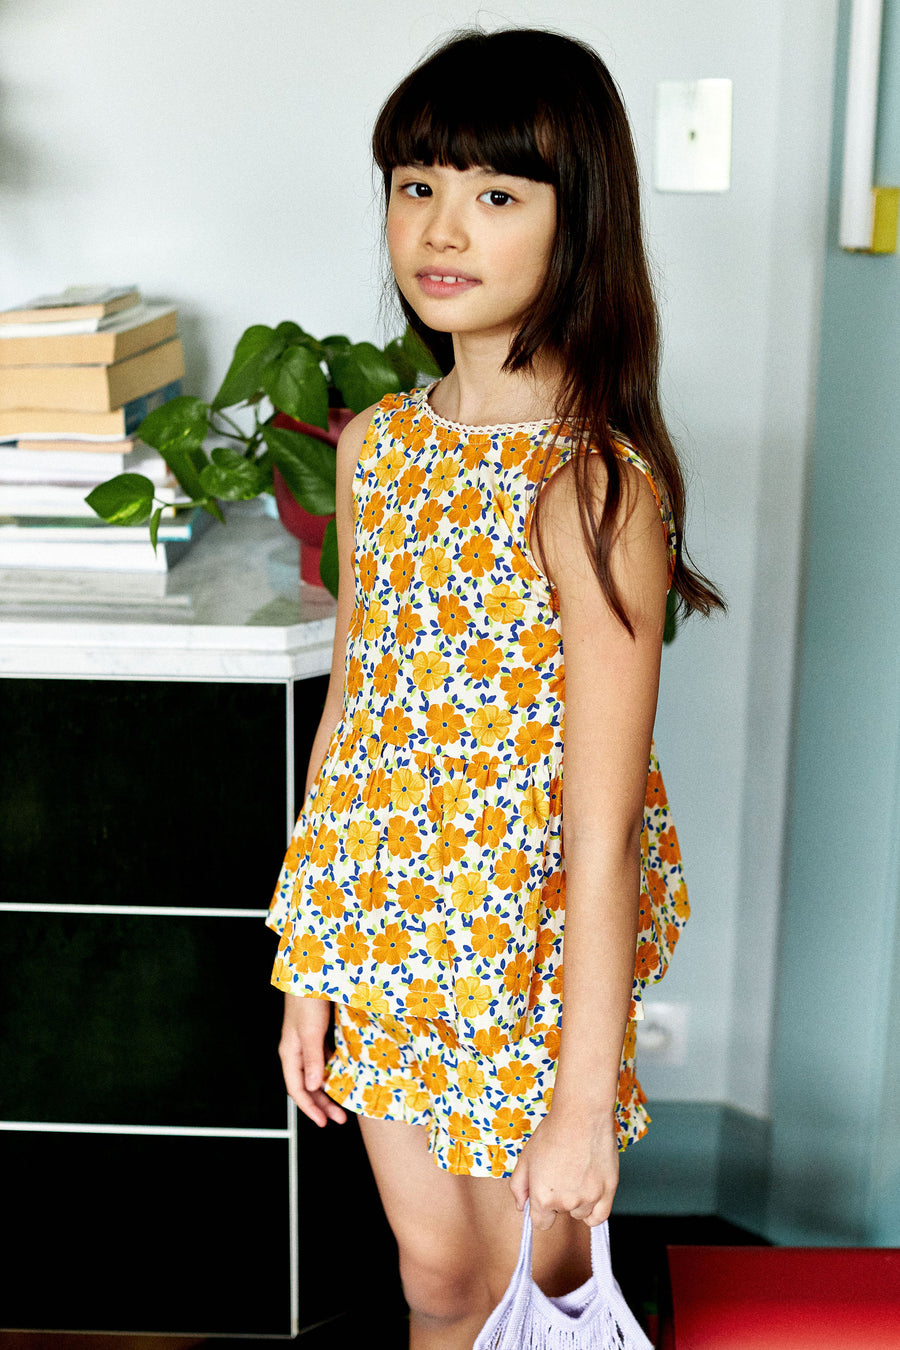 Marilou Shorts ##2640 Orange Flowers